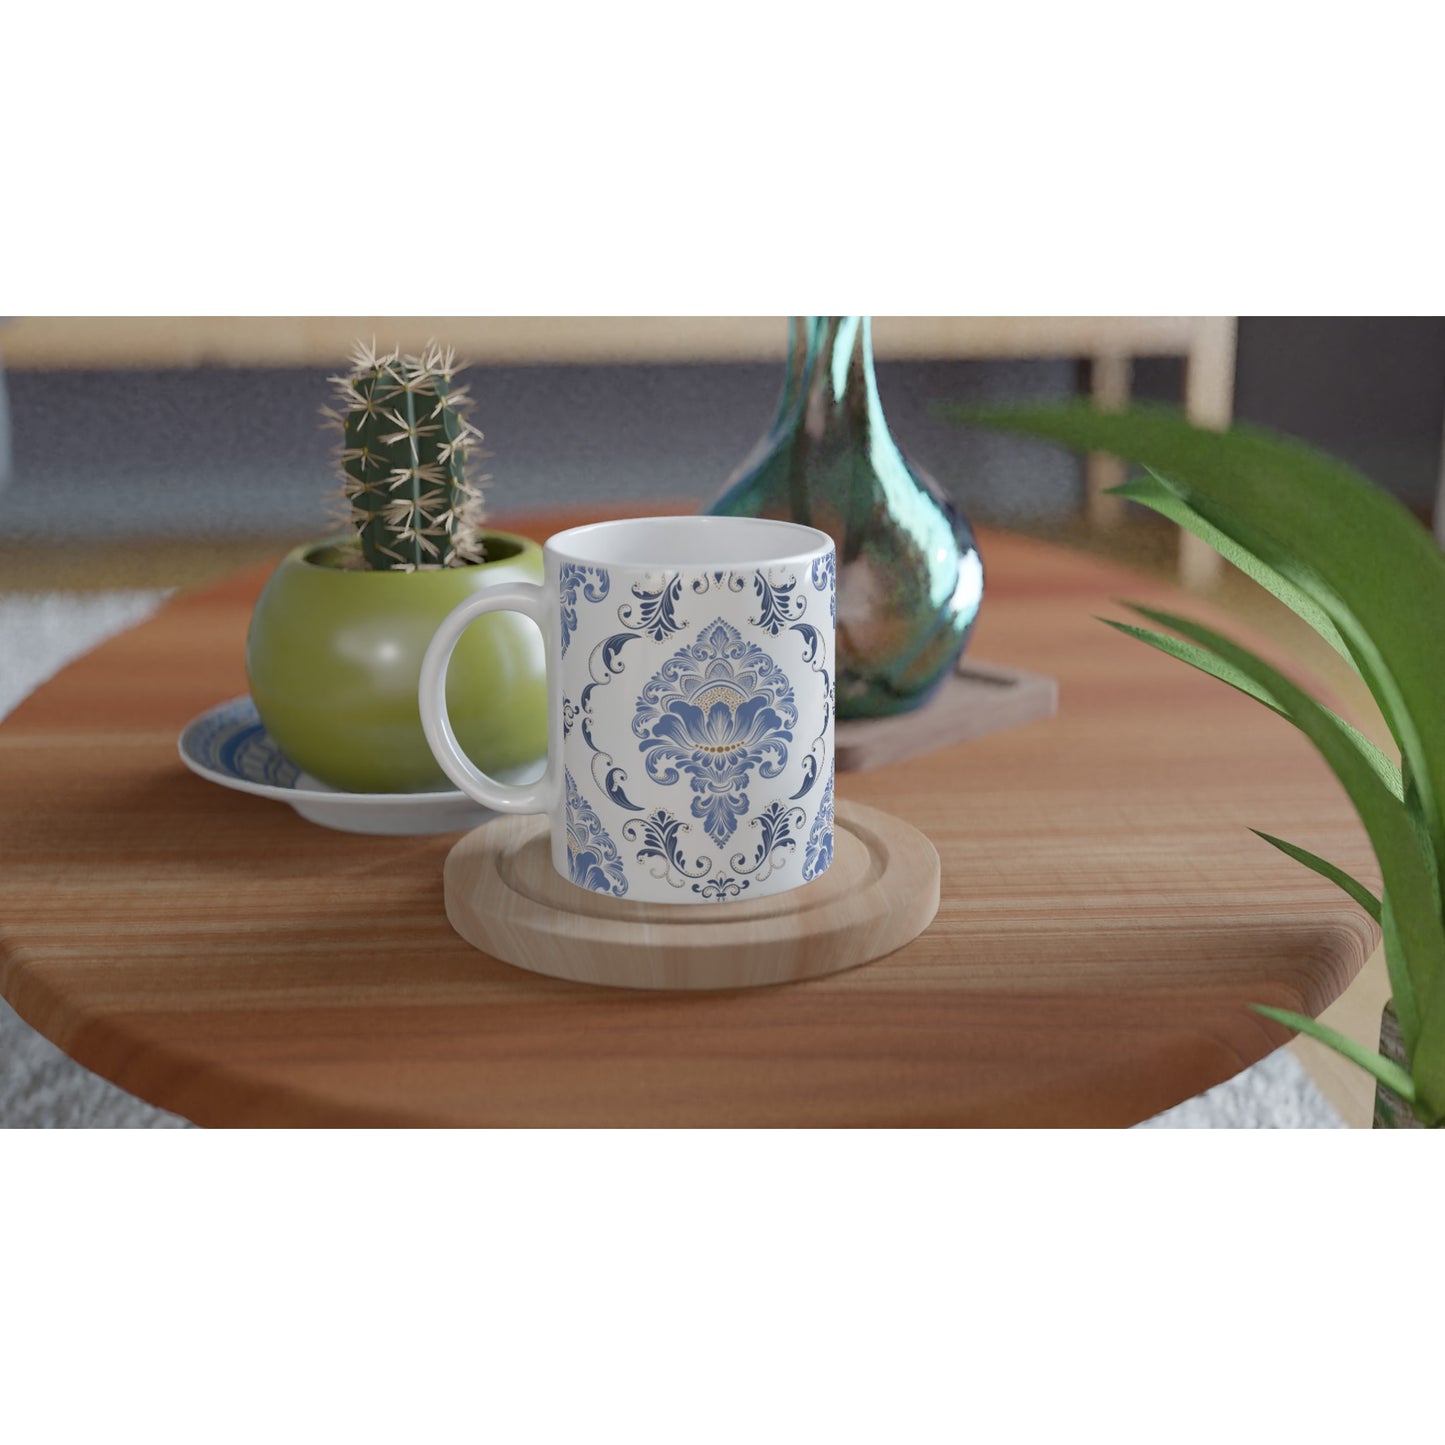 Taza de cerámica con diseño victoriano